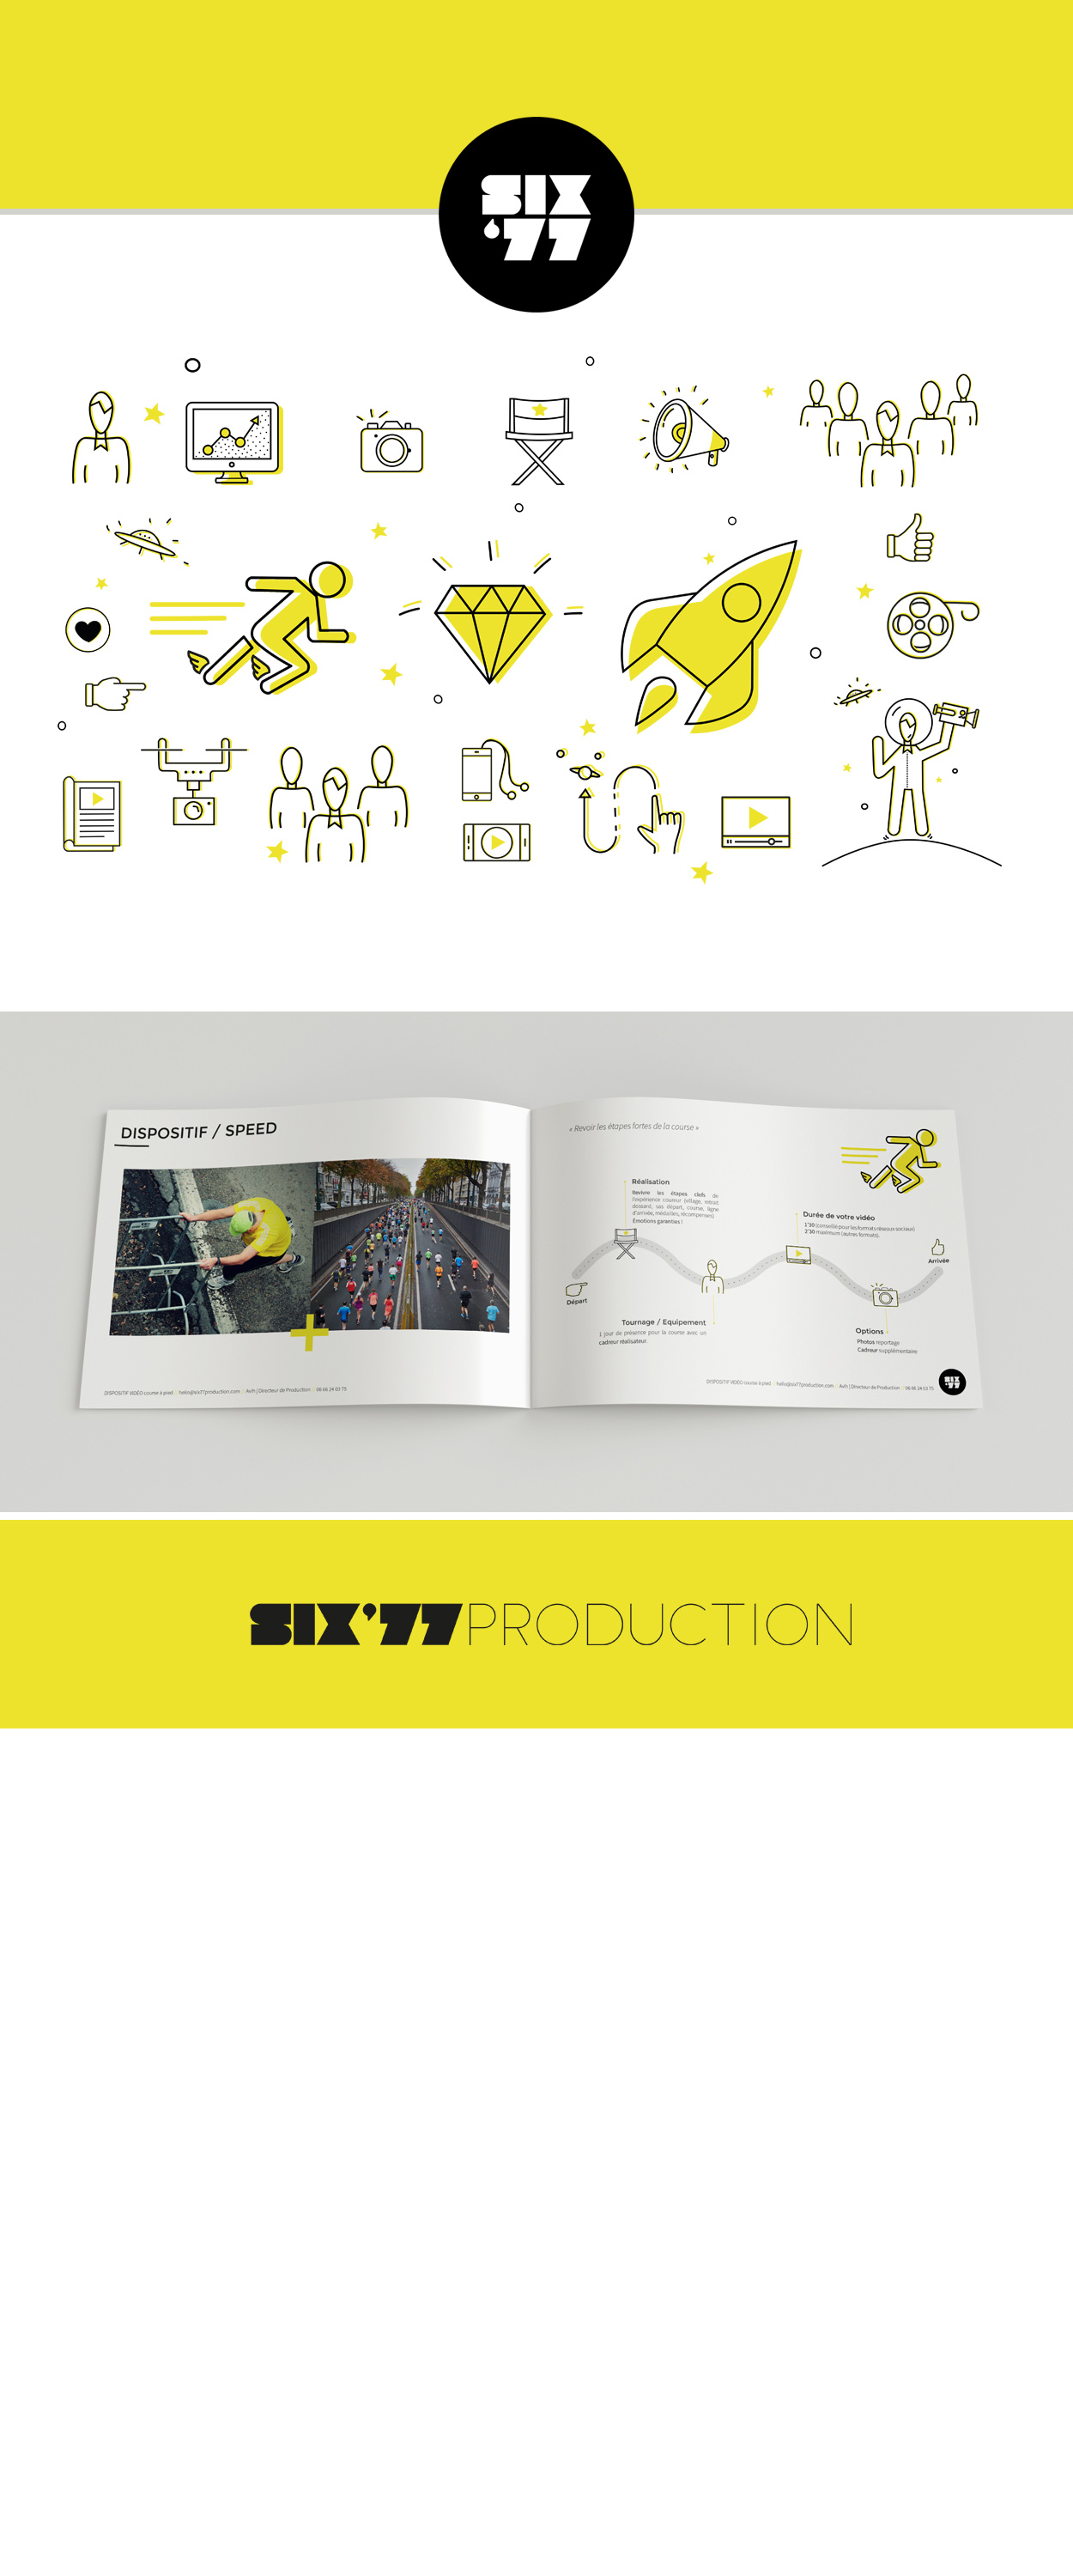 Ralisation brochure // SIX77 PRODUCTION (Paris)